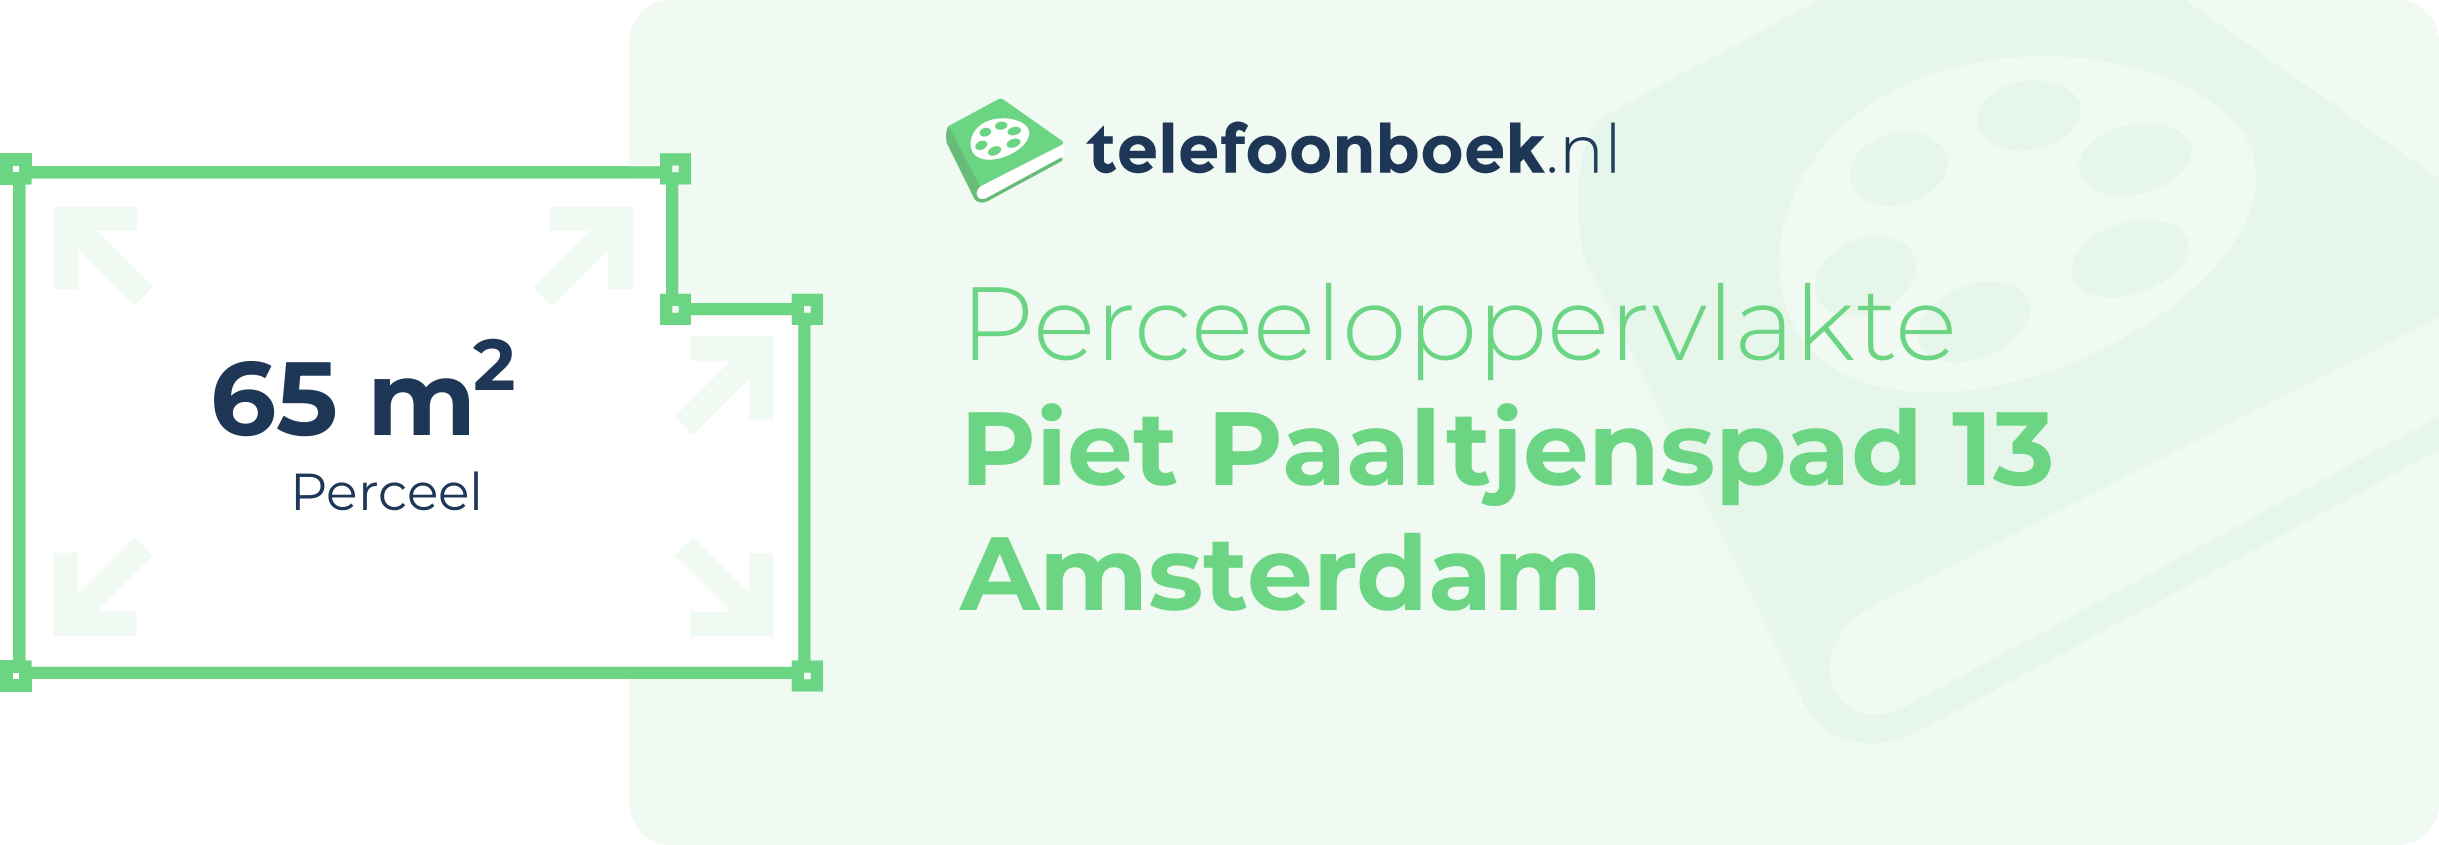 Perceeloppervlakte Piet Paaltjenspad 13 Amsterdam